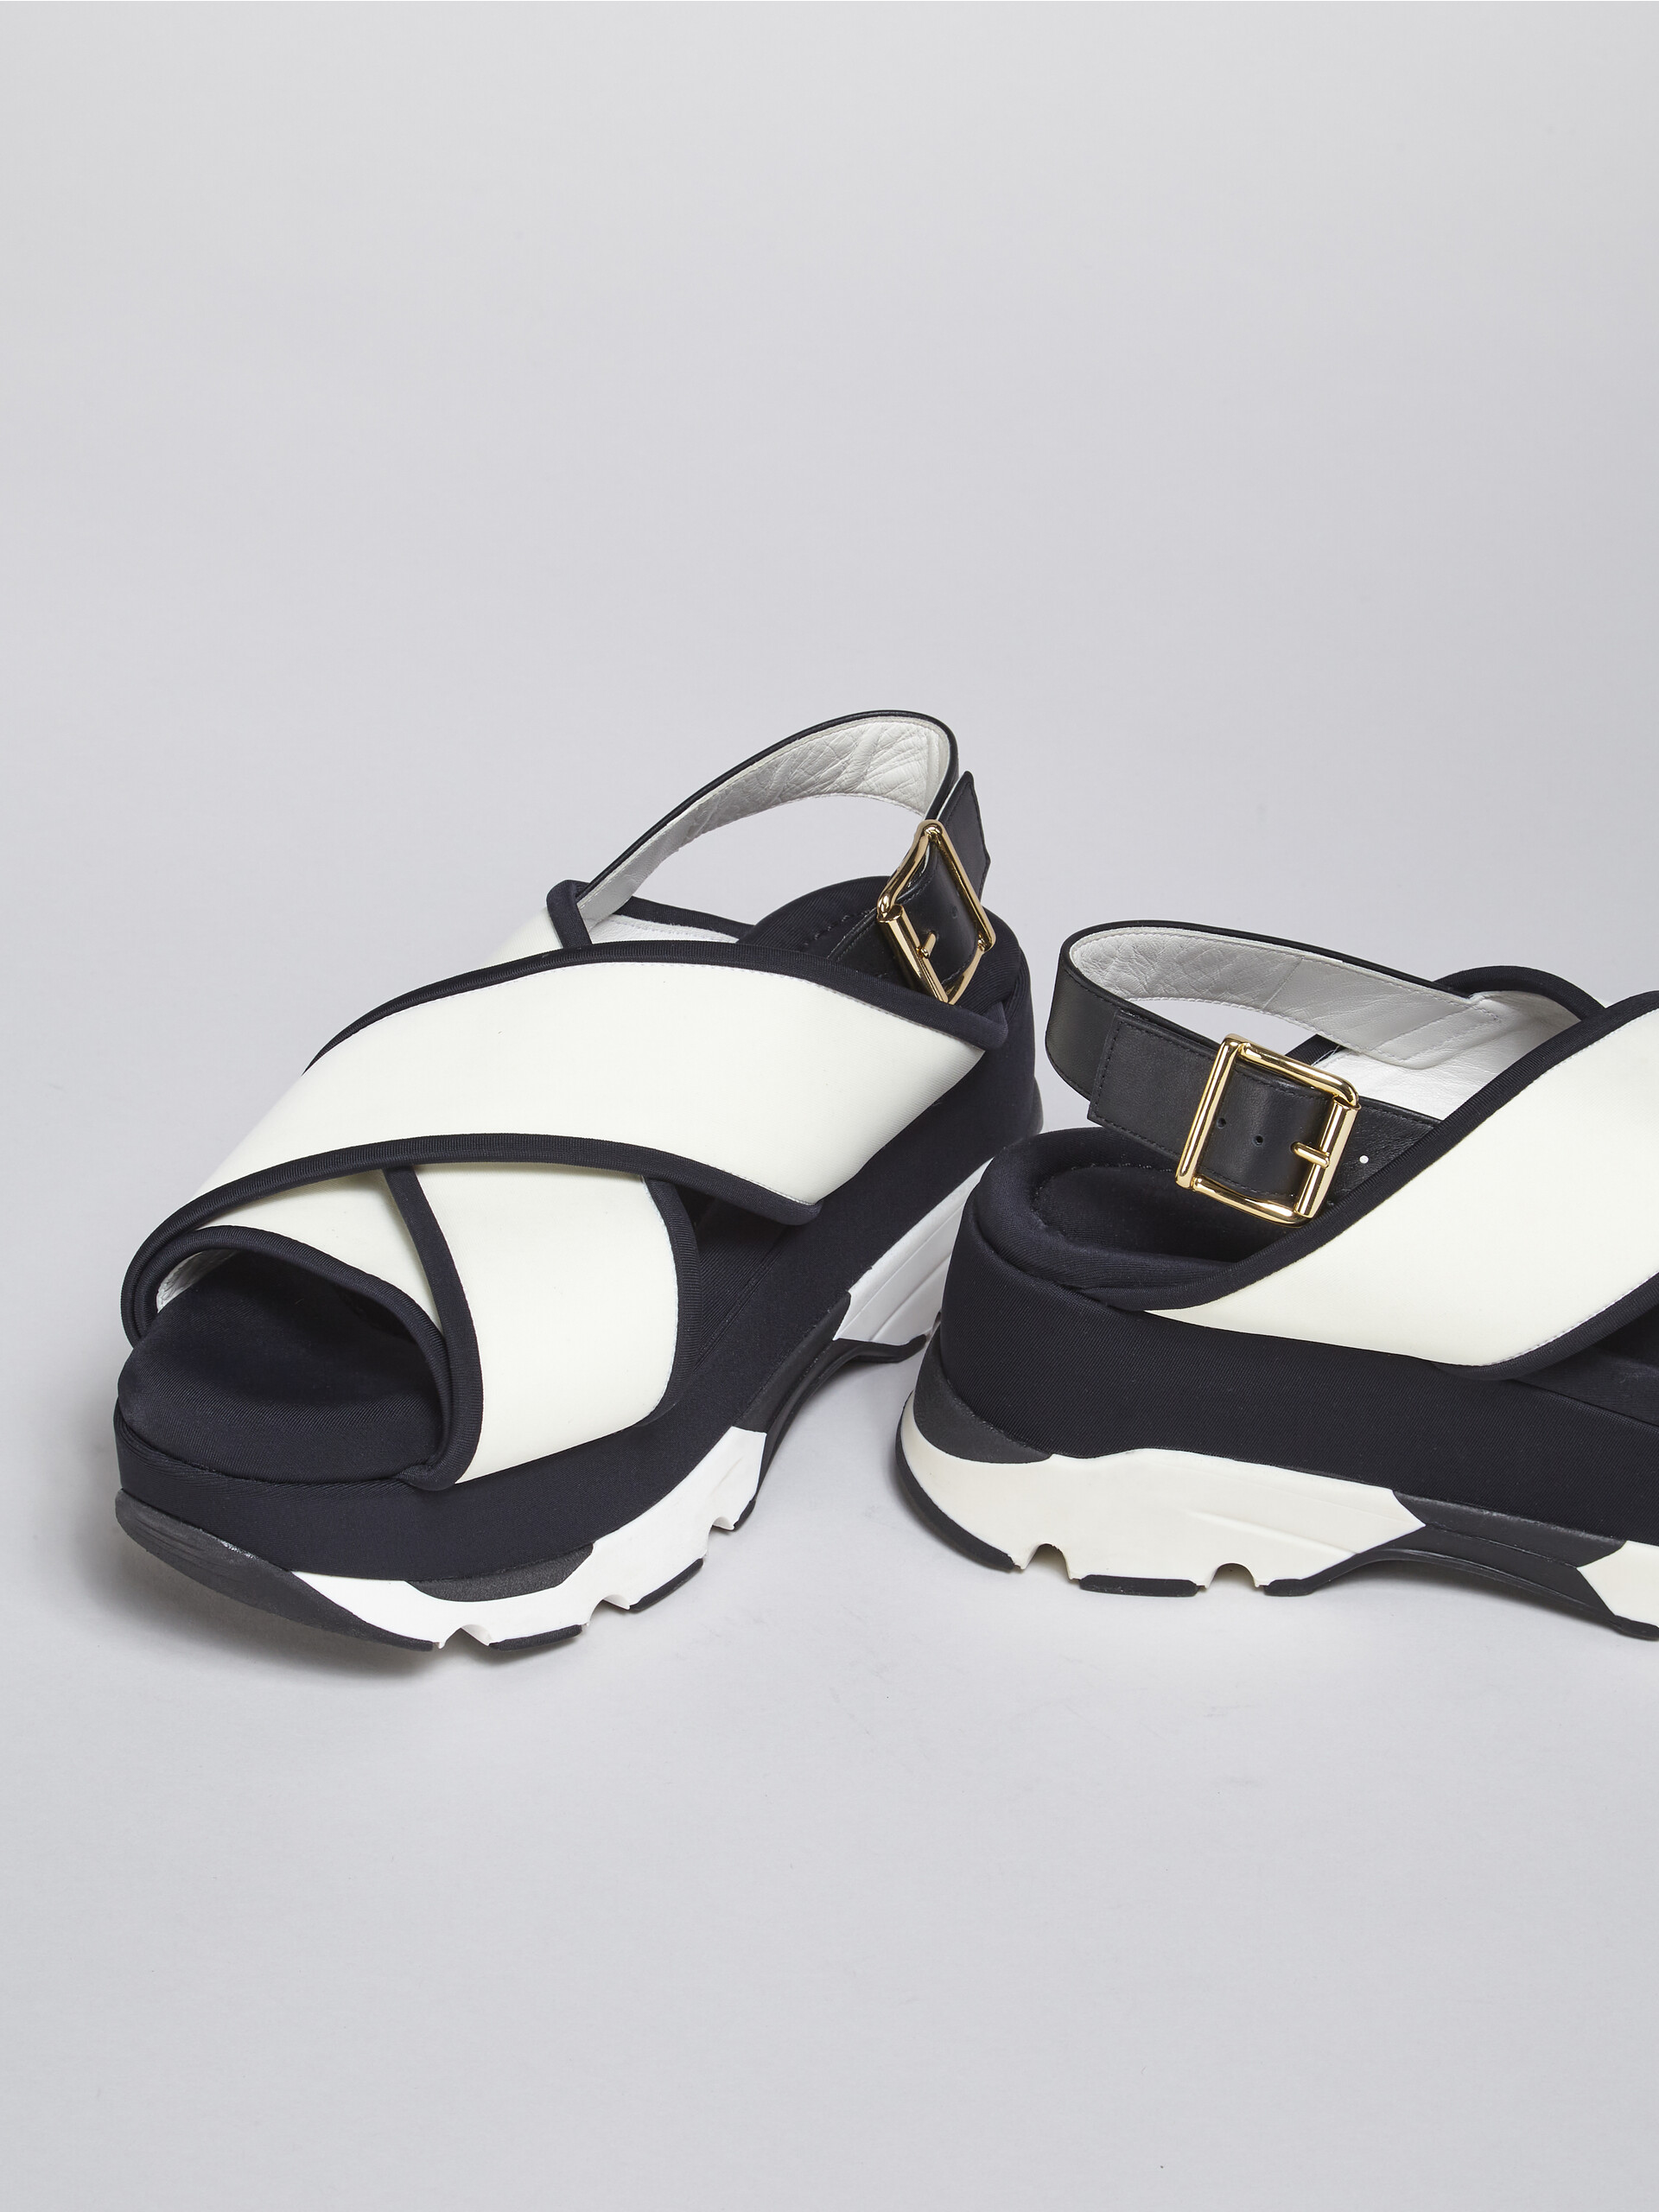 Sandales compensées en tissu technique blanc et noir - Sandales - Image 5